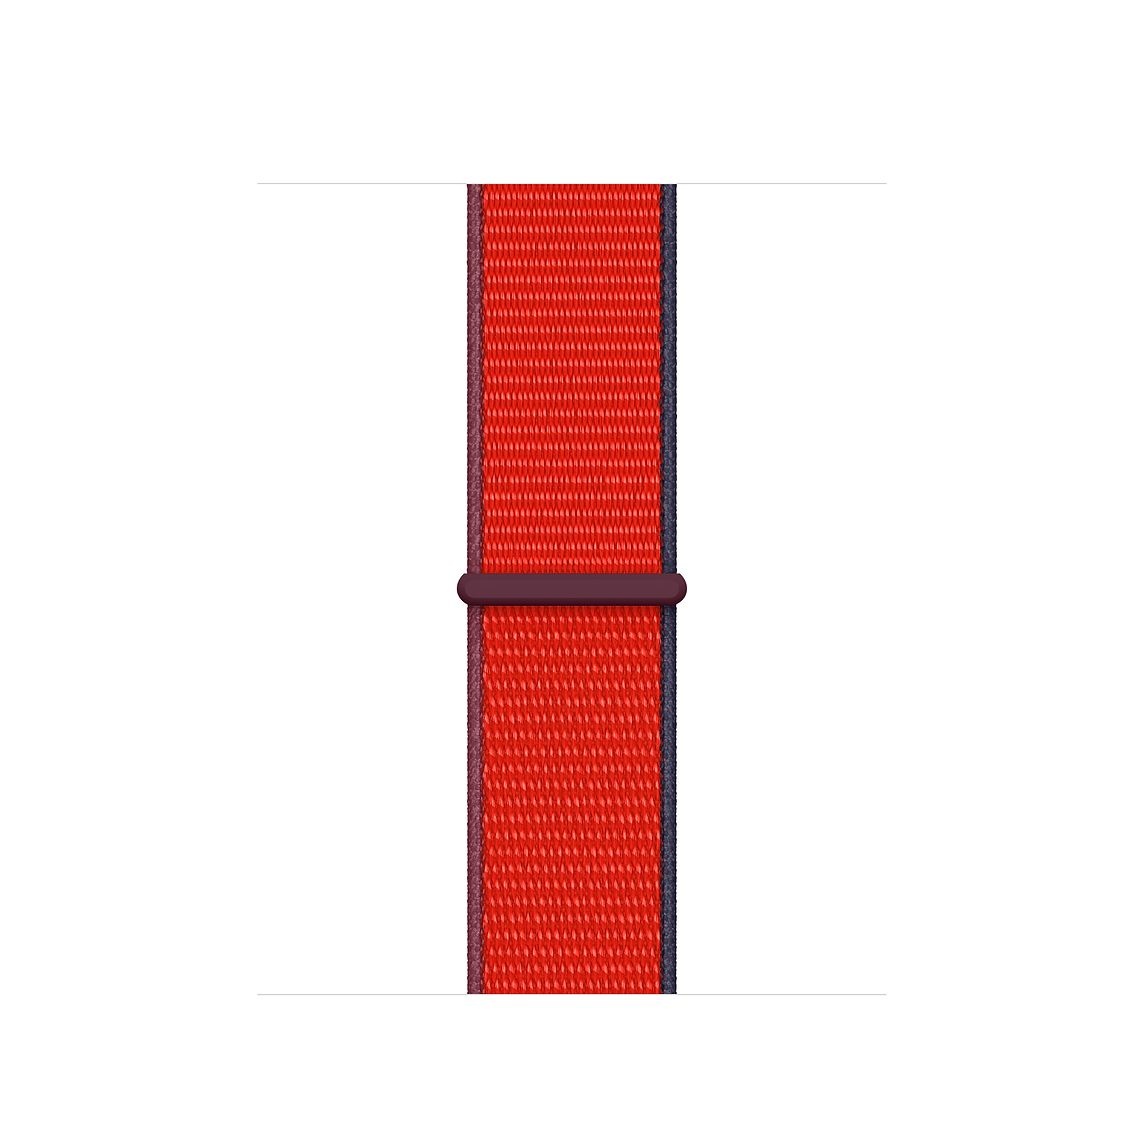 Apple Watch Nylon Sport Loop - dreifarbig rot